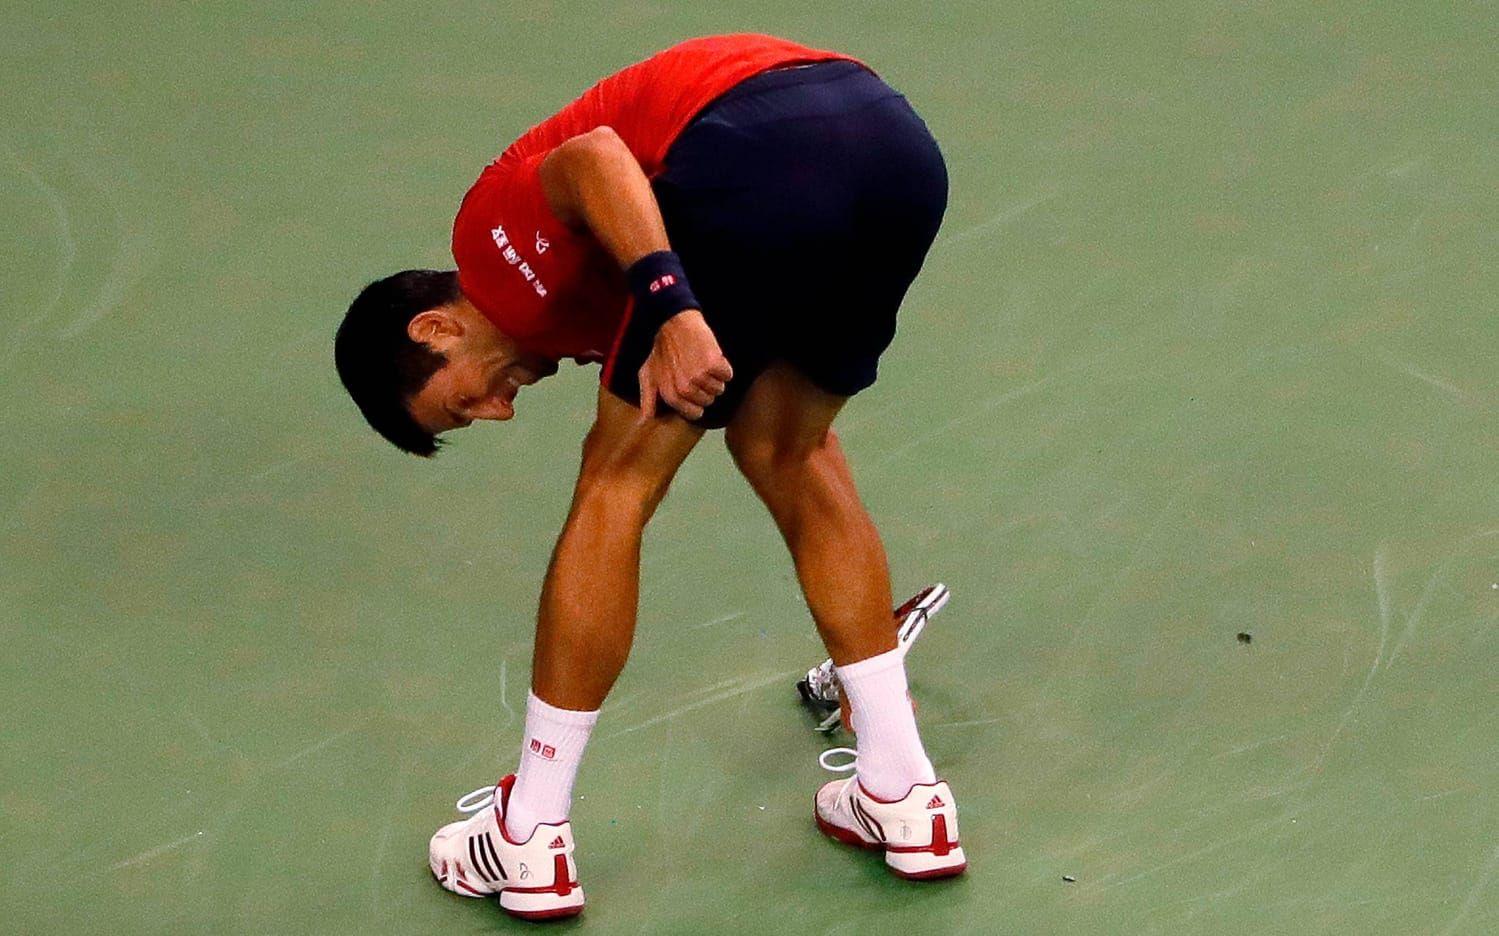 Det brast ordentligt för Novak Djokovic när han åkte ur Shanghai Masters. Bild: TT